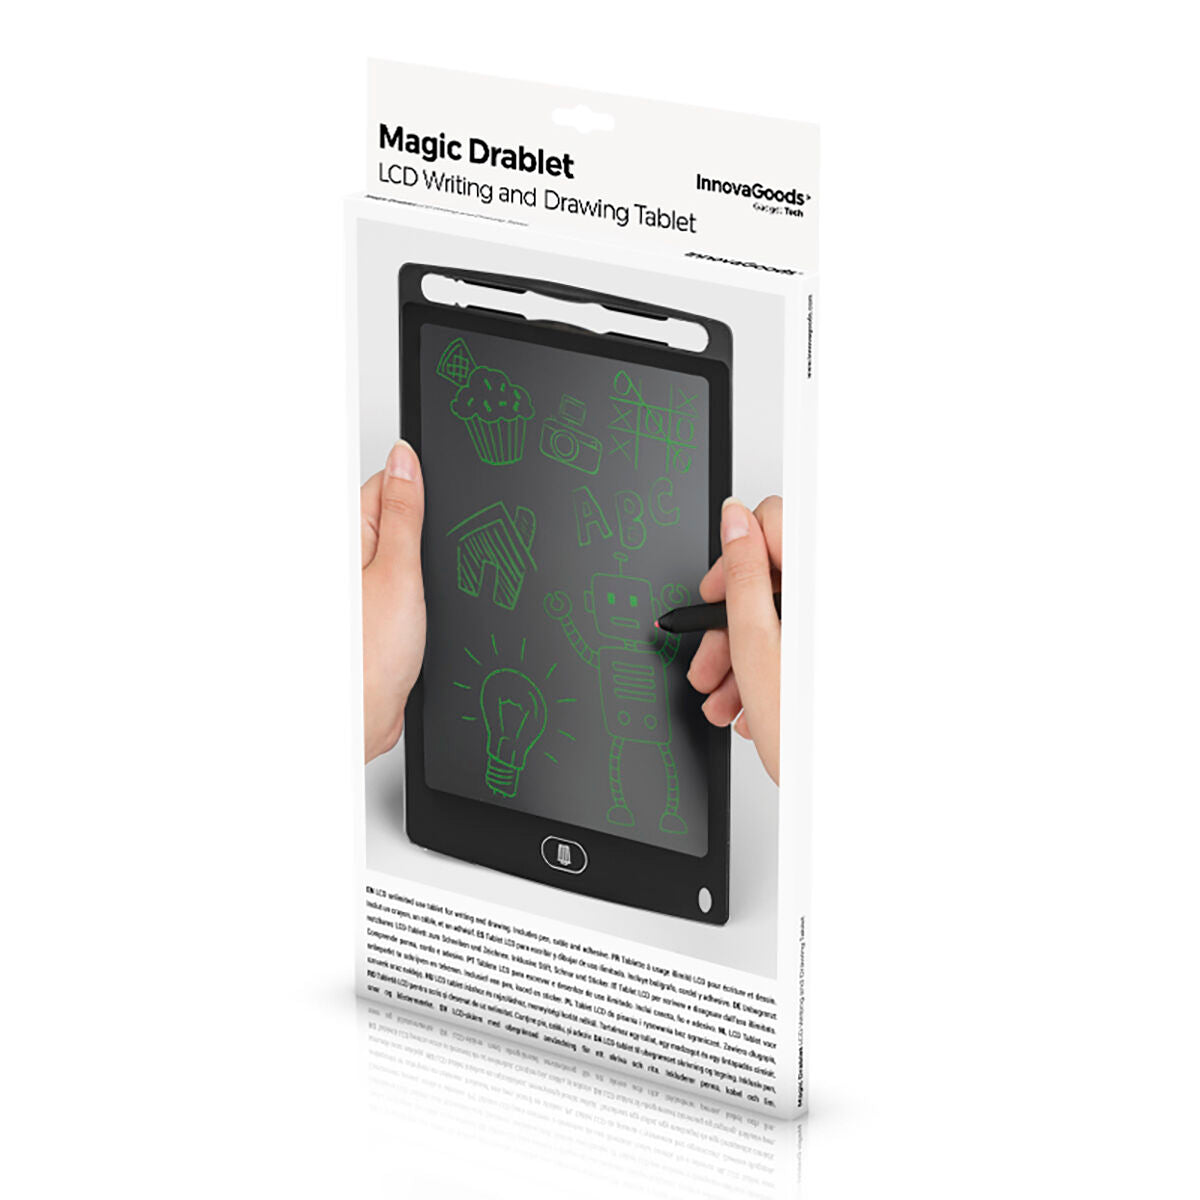 LCD Schreib und Zeichentafel Magic Drablet InnovaGoods - CA International 